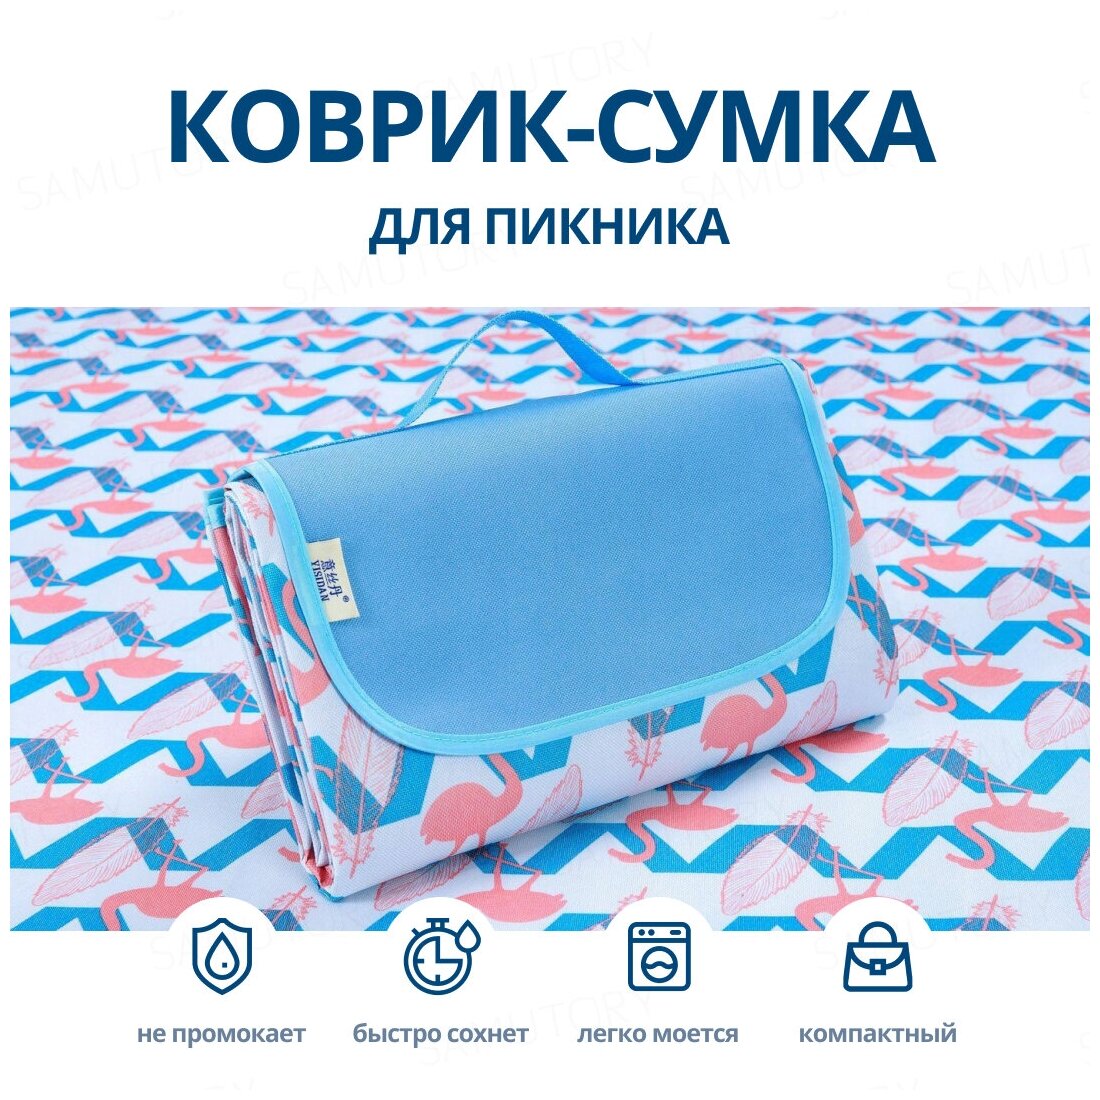 Samutory / Водонепроницаемый коврик для пикника 150х200см Синий (Сумка-покрывало/плед для пляжа)